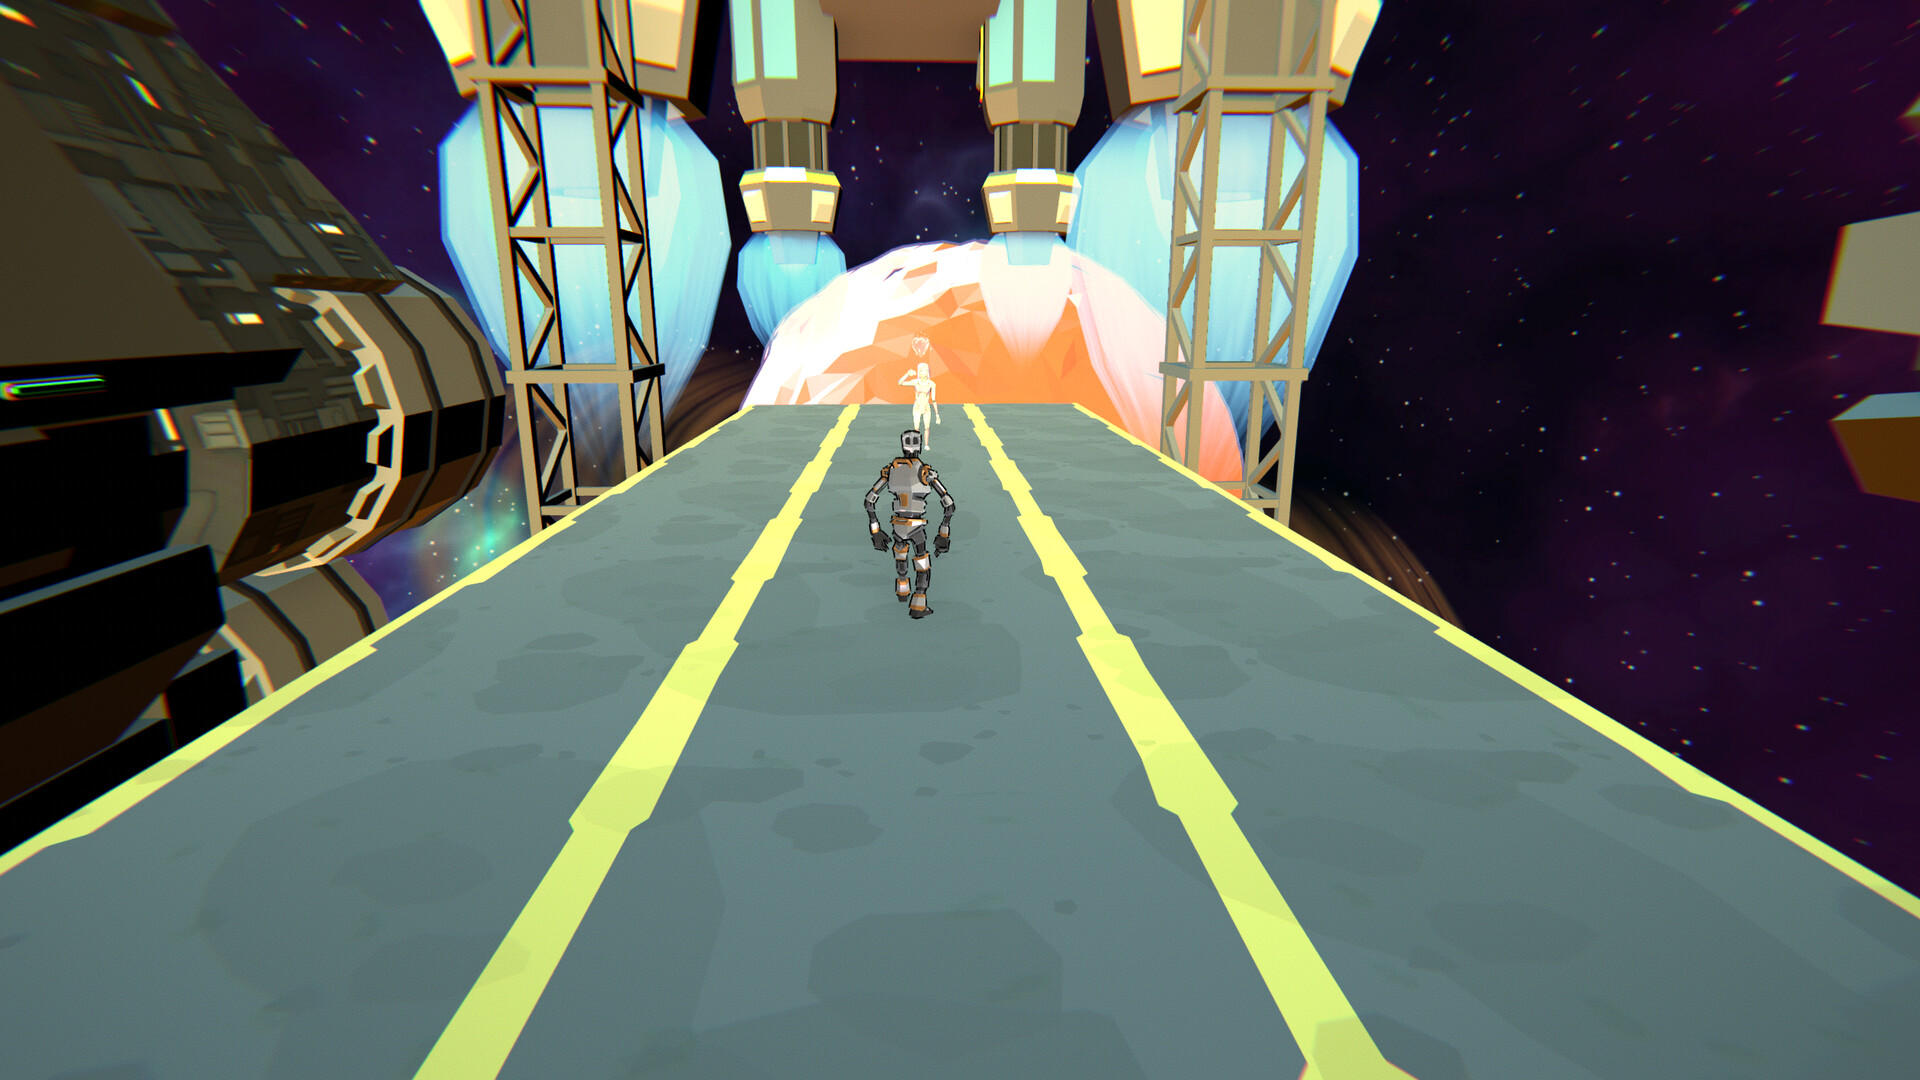 Laika screenshot game